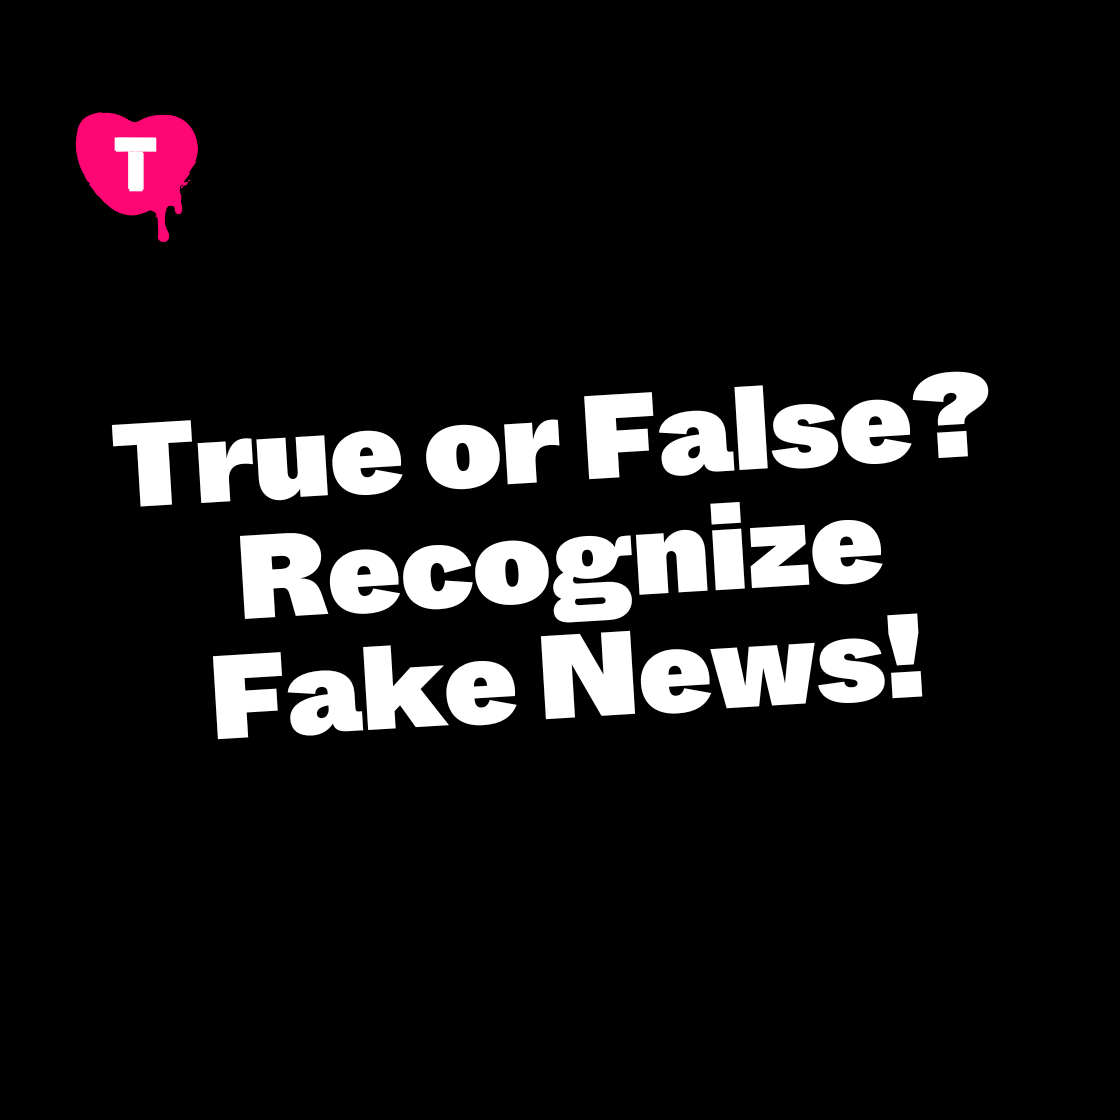 True or False? Recognize Fake News!